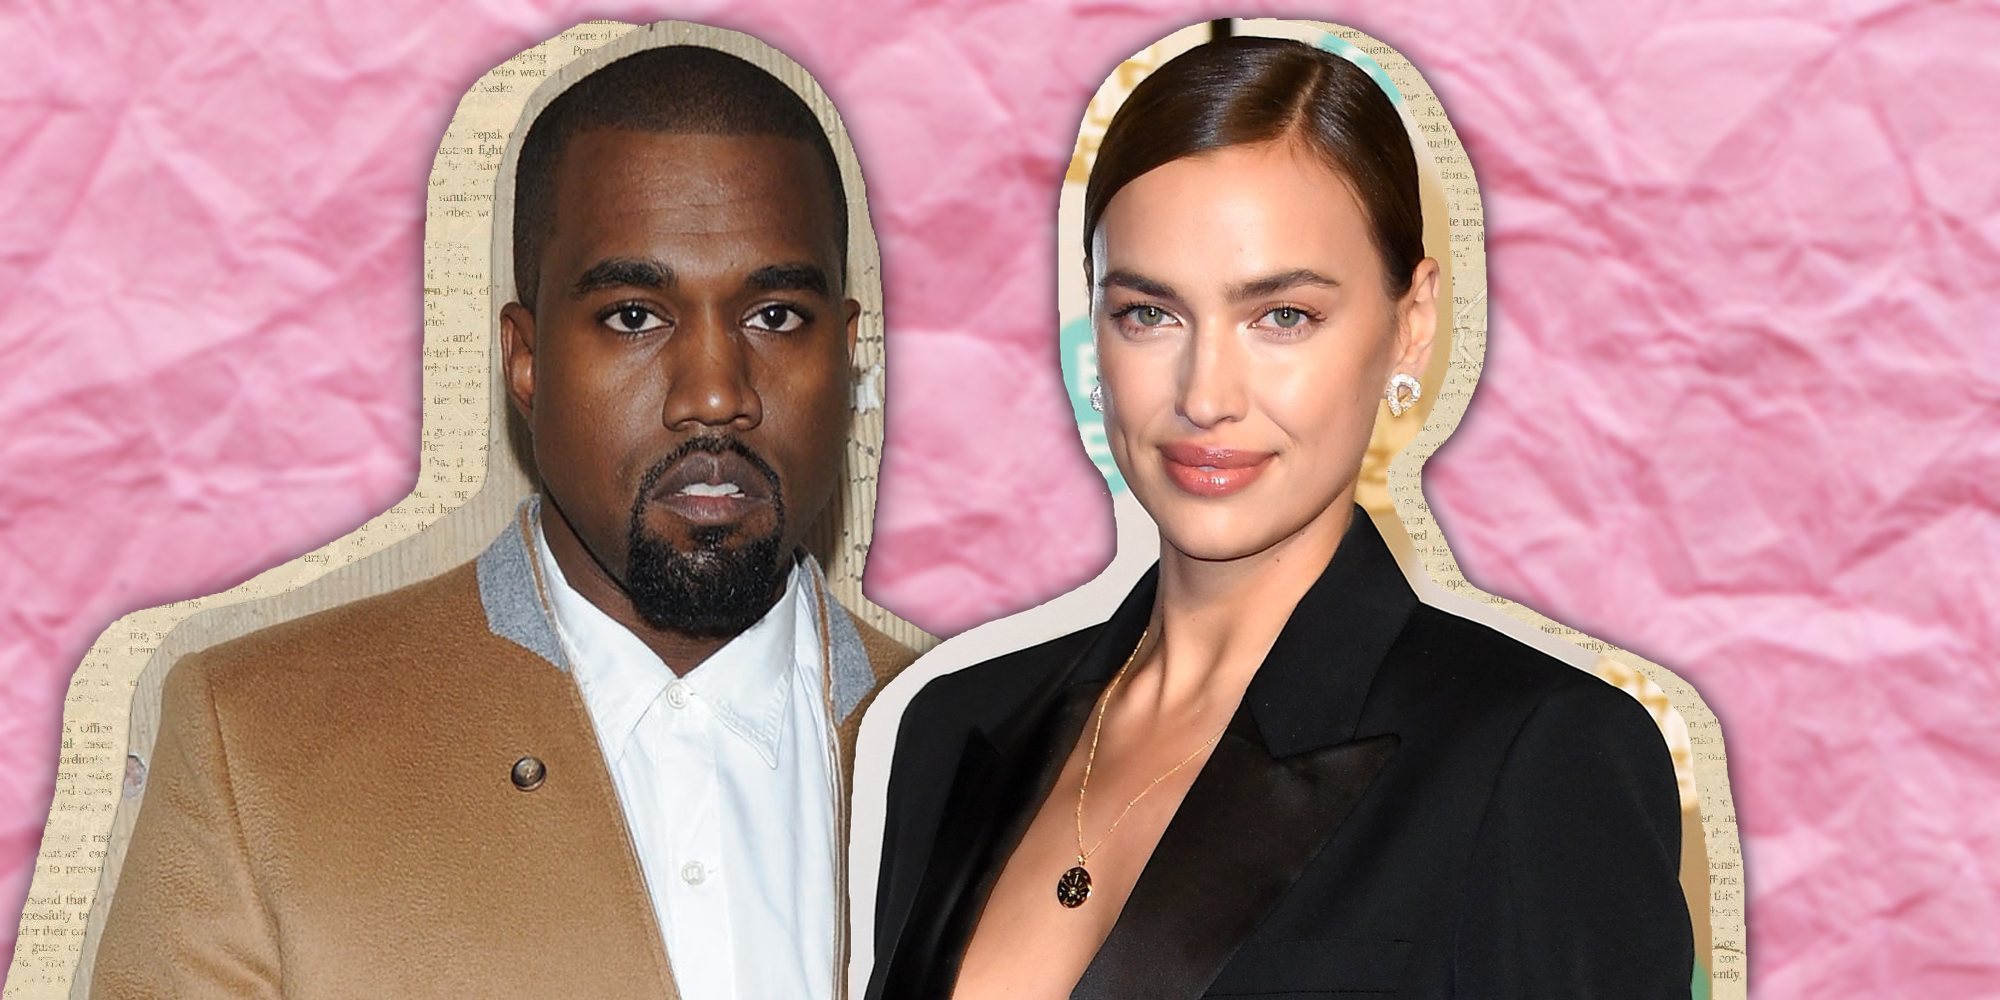 ¿Están saliendo Kanye West e Irina Shayk?